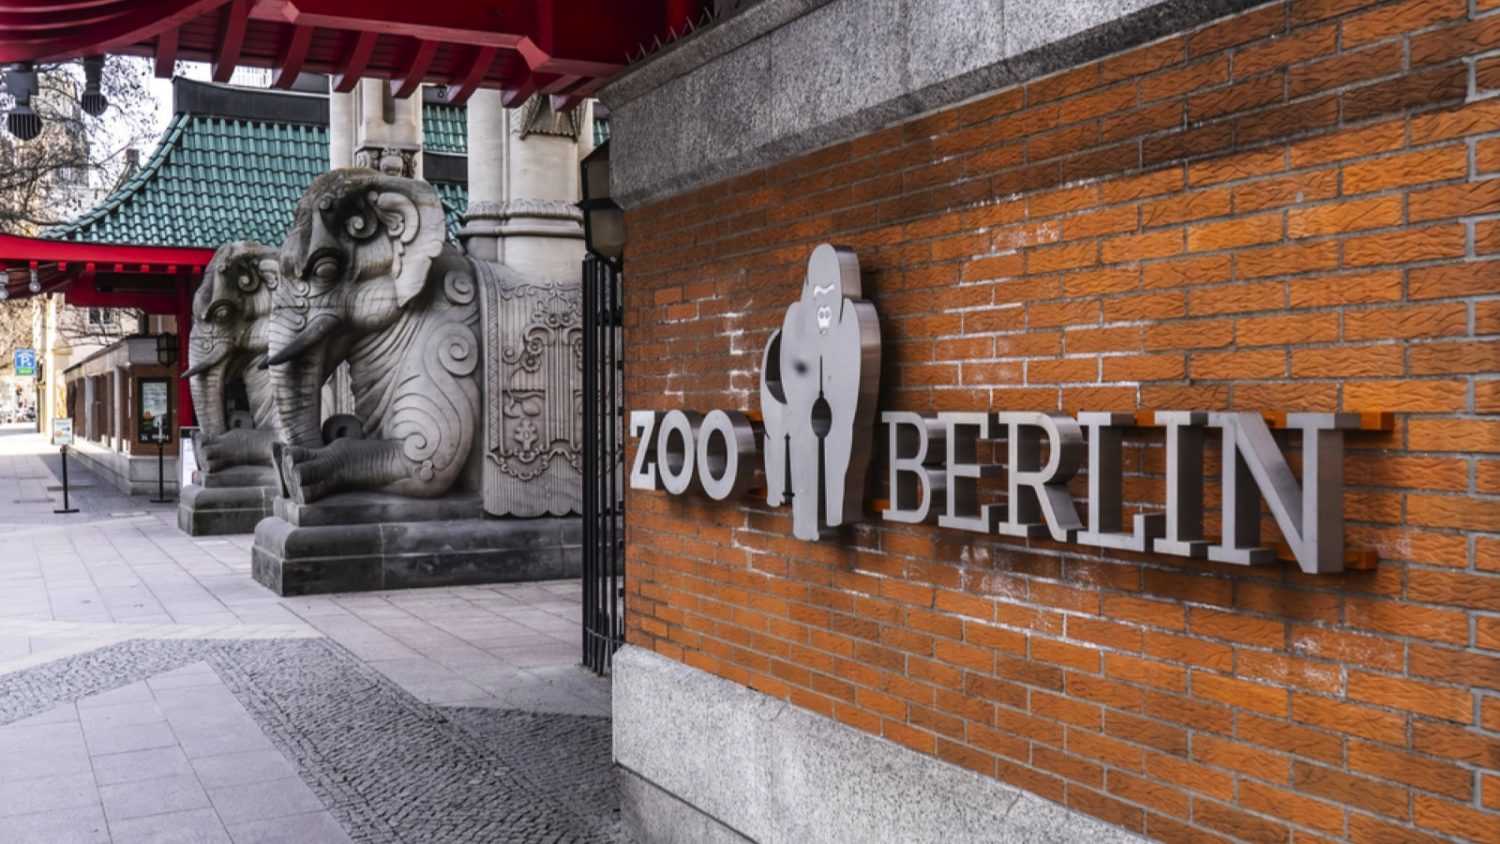 Berlin Zoo in the city center of Berlin - BERLIN, GERMANY - MARCH 11, 2021